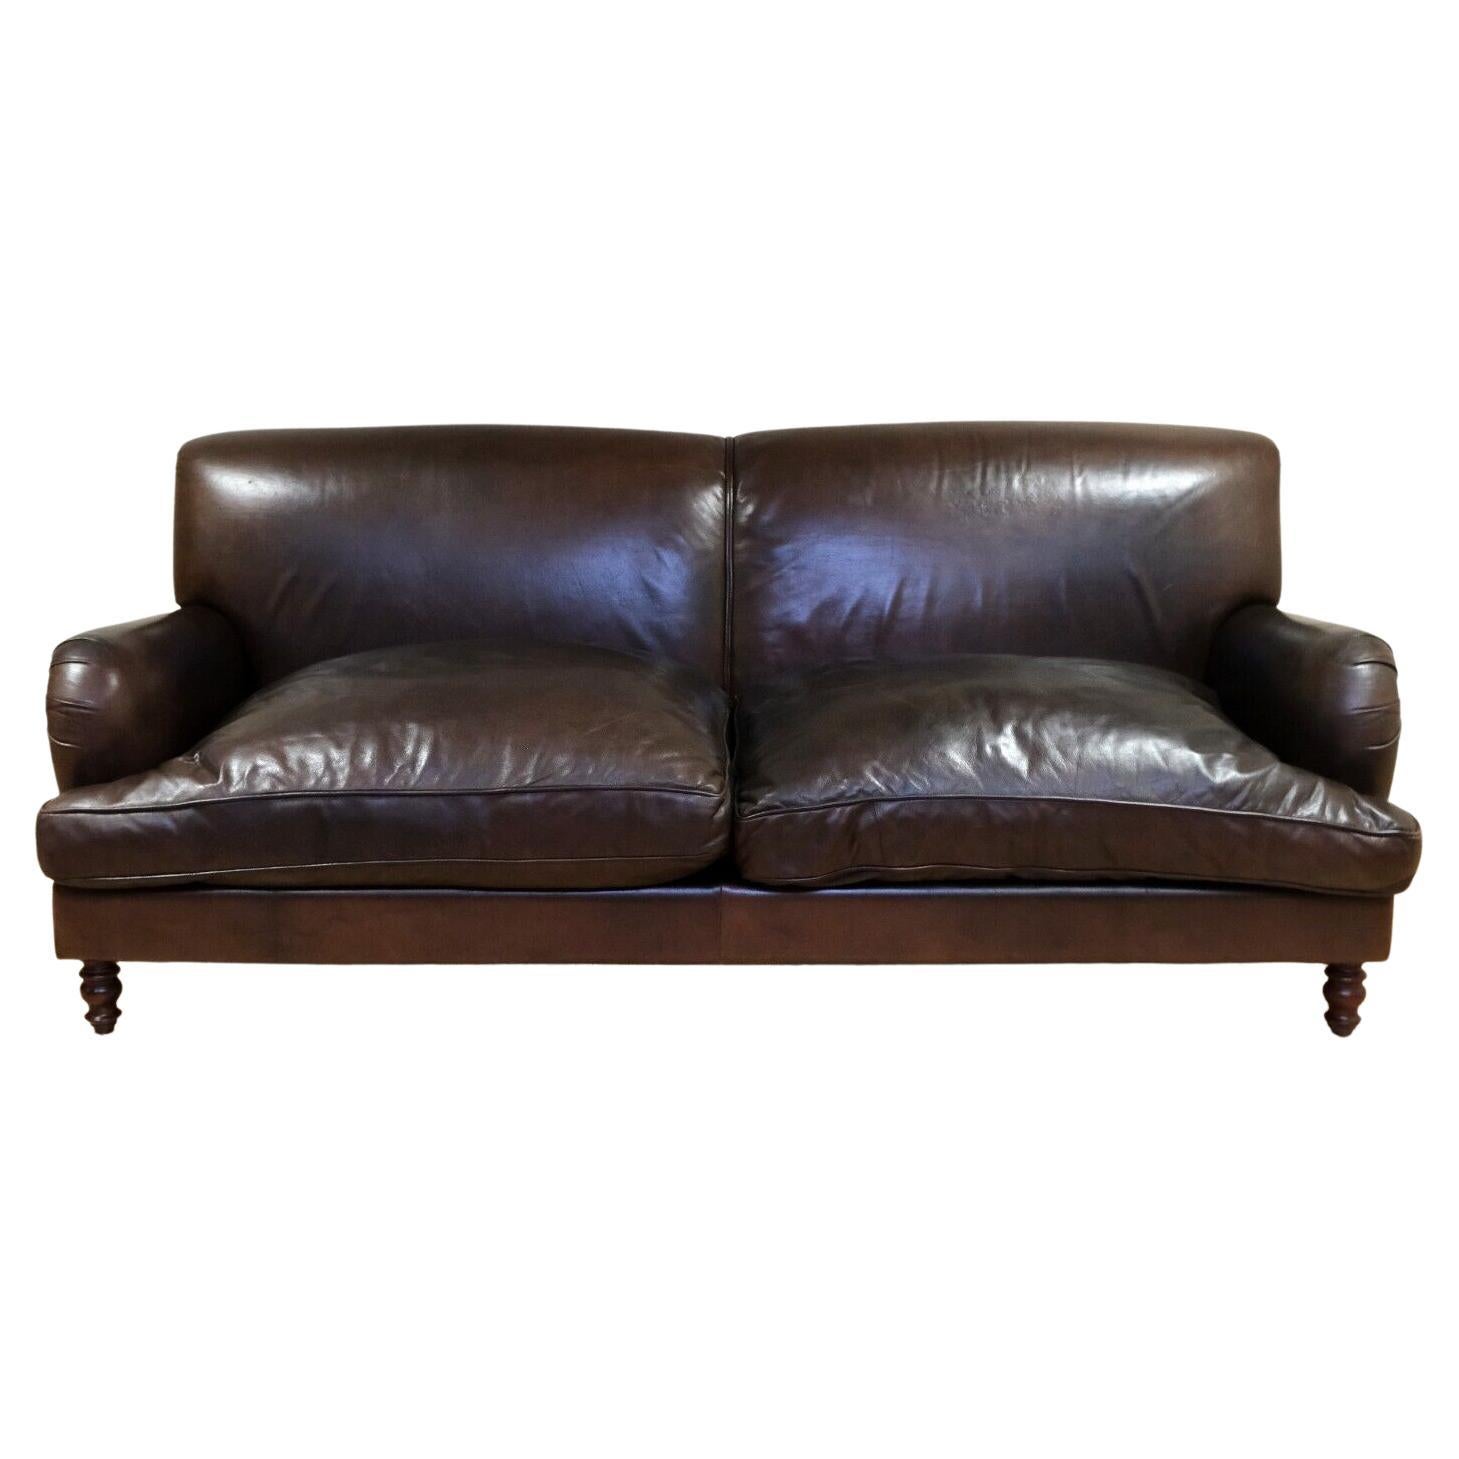 Wir freuen uns, dieses elegante Dreisitzer-Sofa aus braunem Leder im Vintage By-Stil mit reversiblen Kissen zum Verkauf anbieten zu können.

Dieses elegante und gut verarbeitete Sofa verfügt über eine großzügige Sitzfläche, die drei Personen bequem